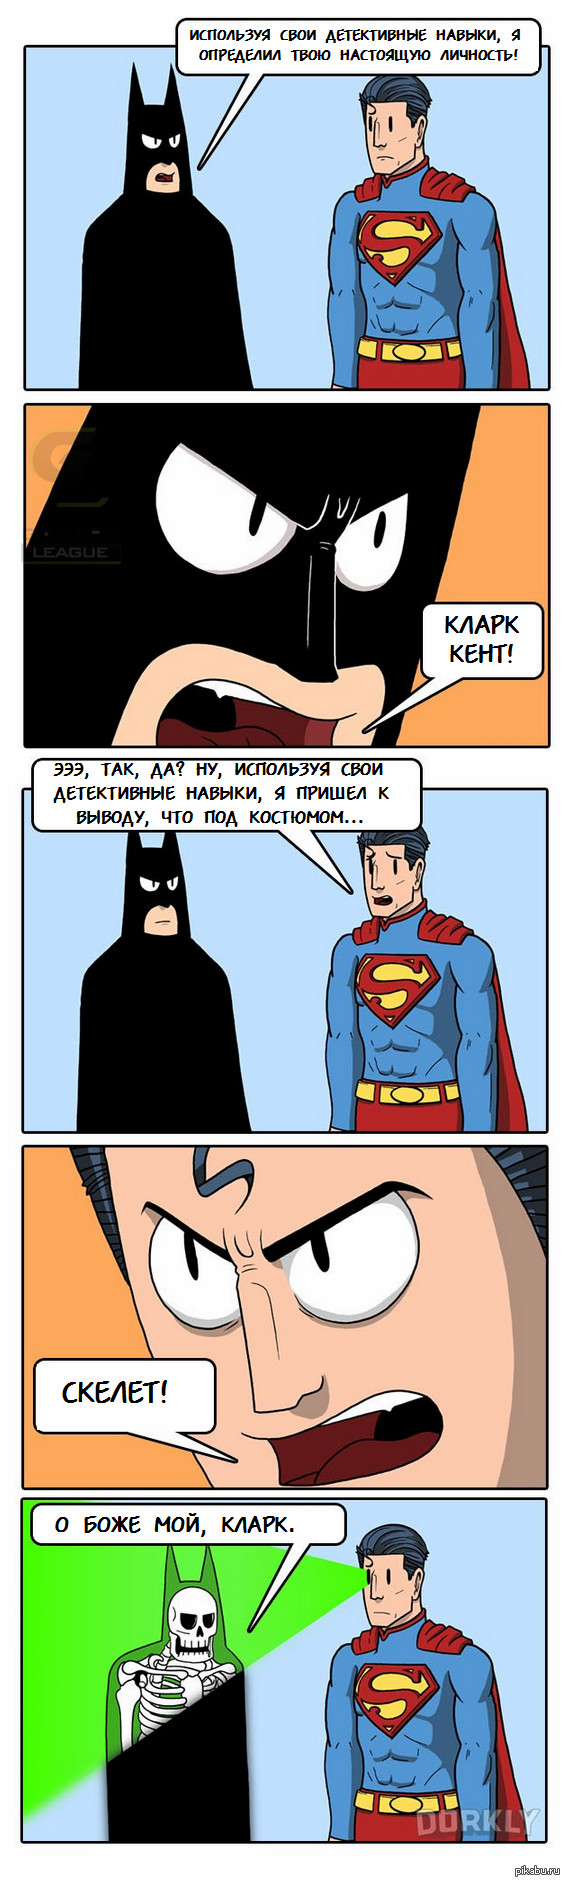 Batman vs Superman:  